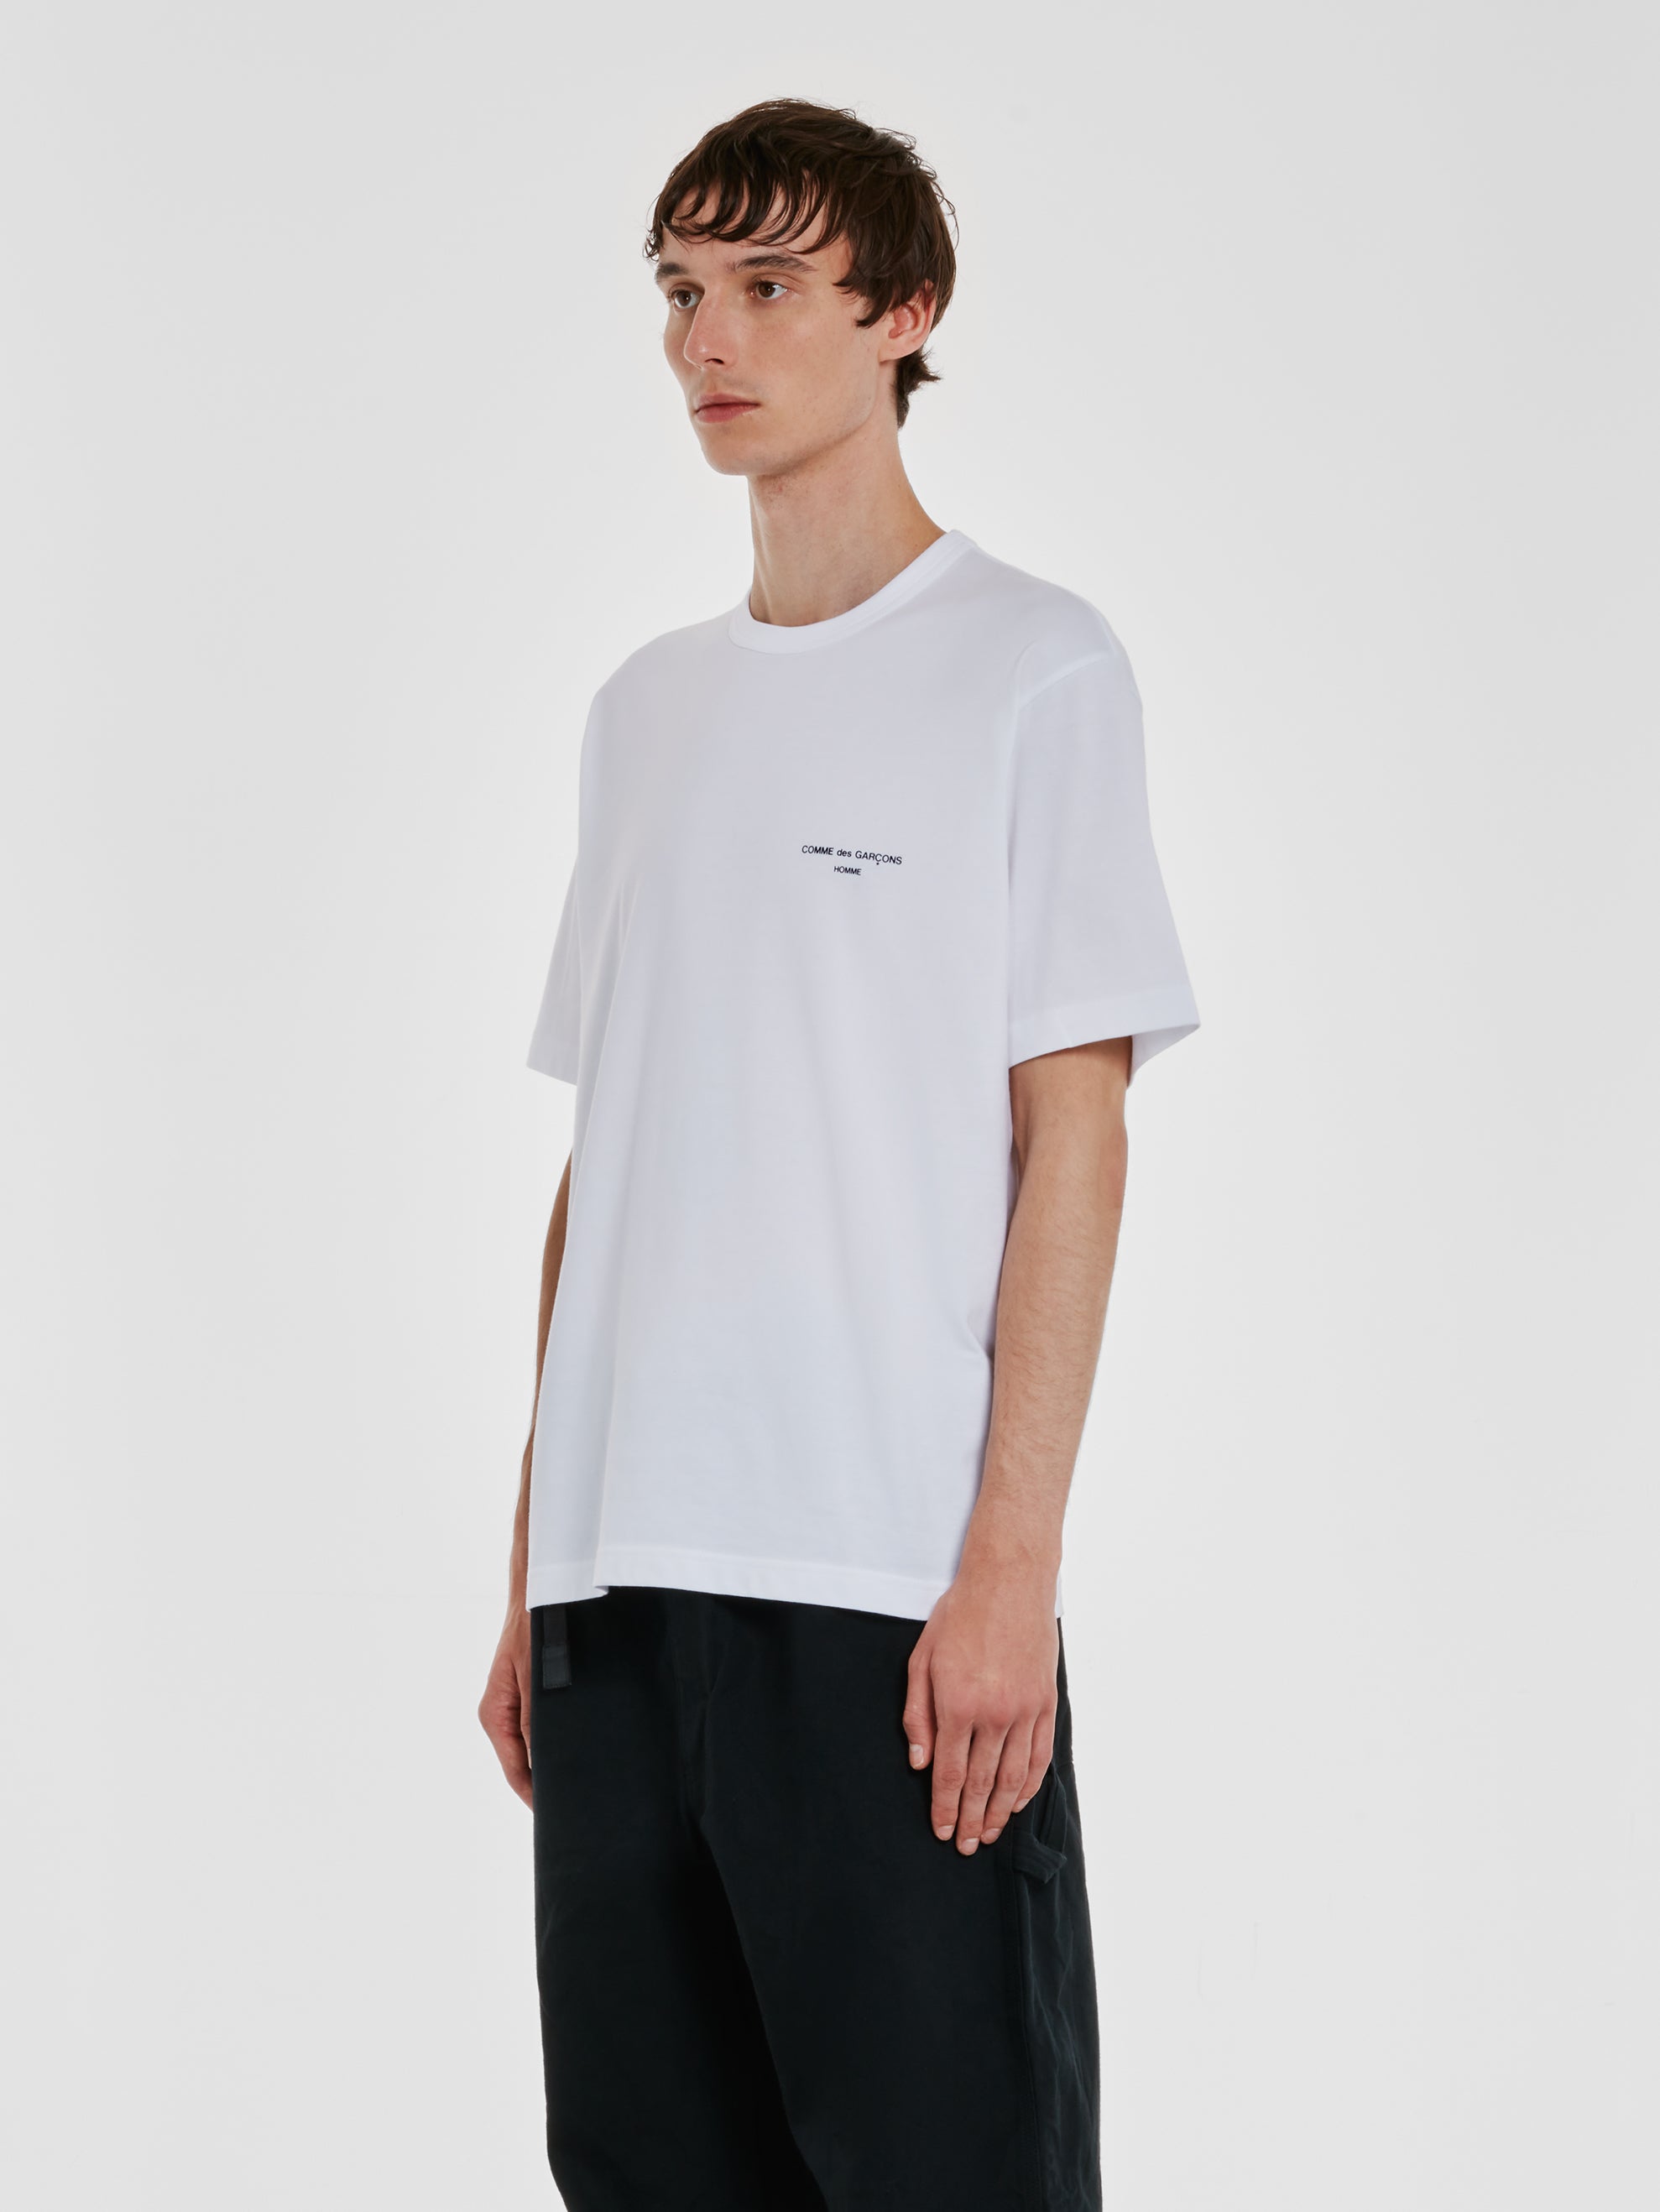 Comme des Garçons Homme - Men's T-Shirt - (White)